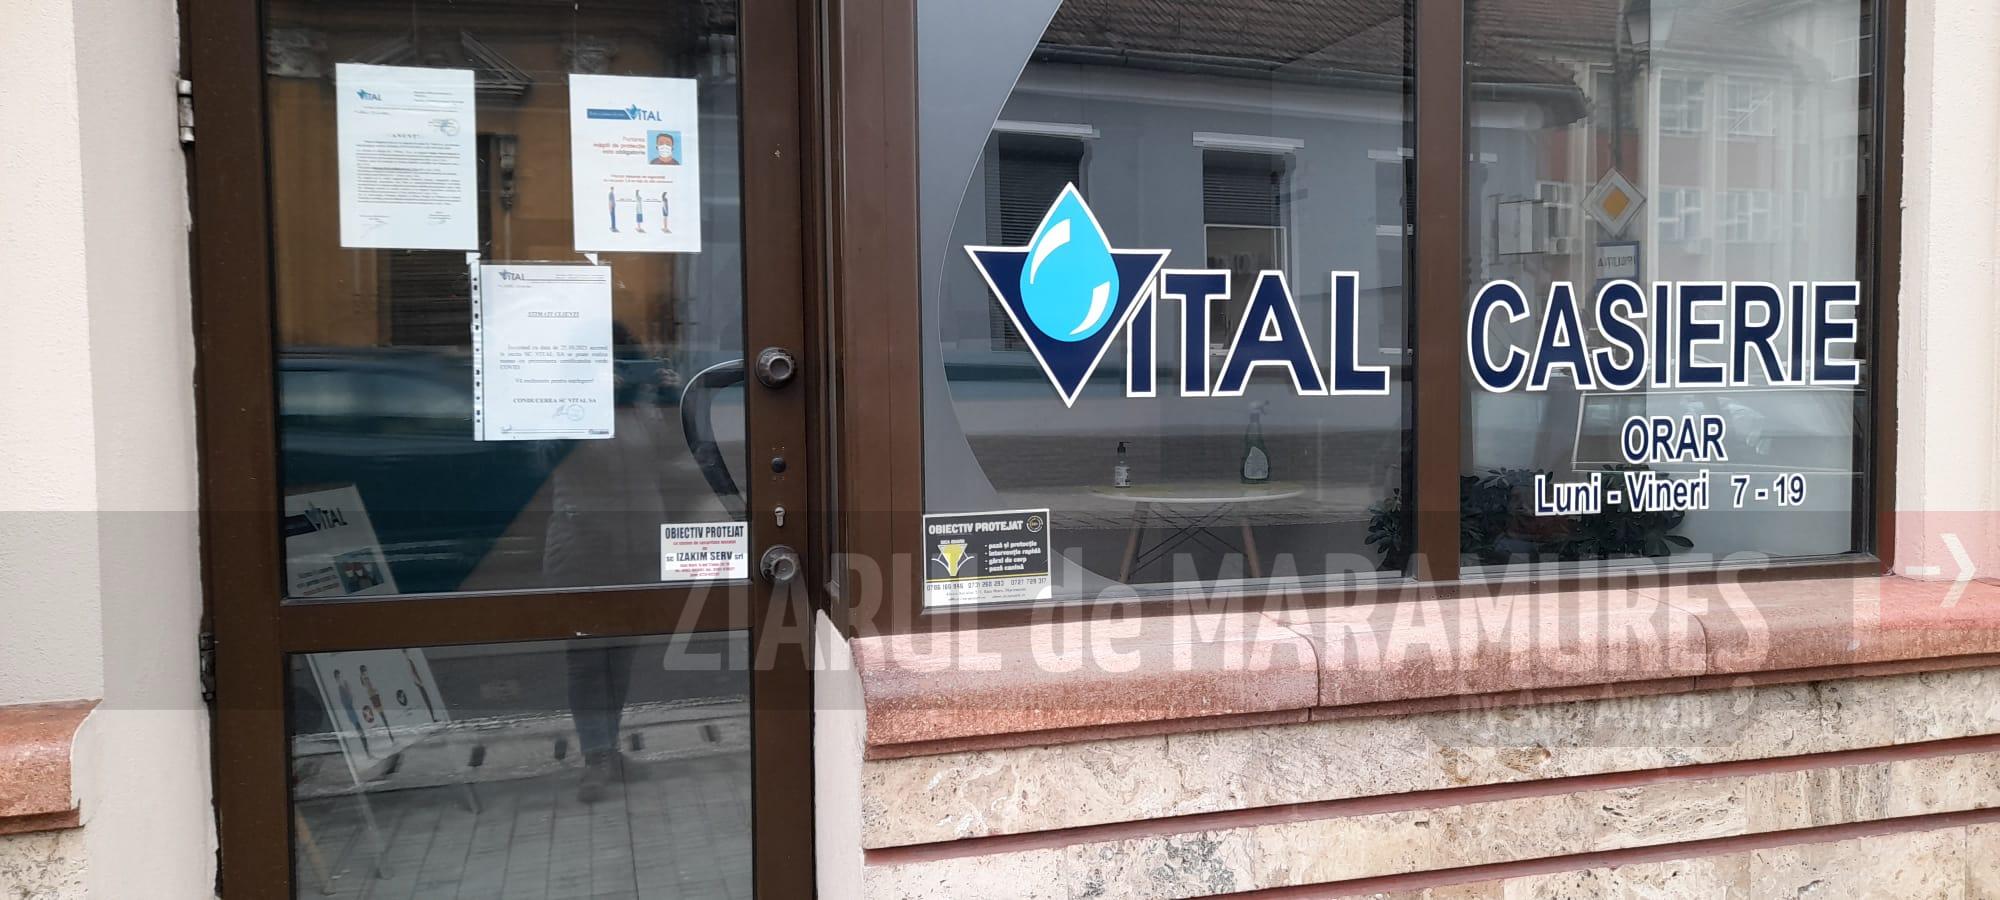 ANUNȚ: Mentenanță la rețeaua de electricitate a S.C. VITAL S.A. O casierie va fi închisă marți 6 septembrie